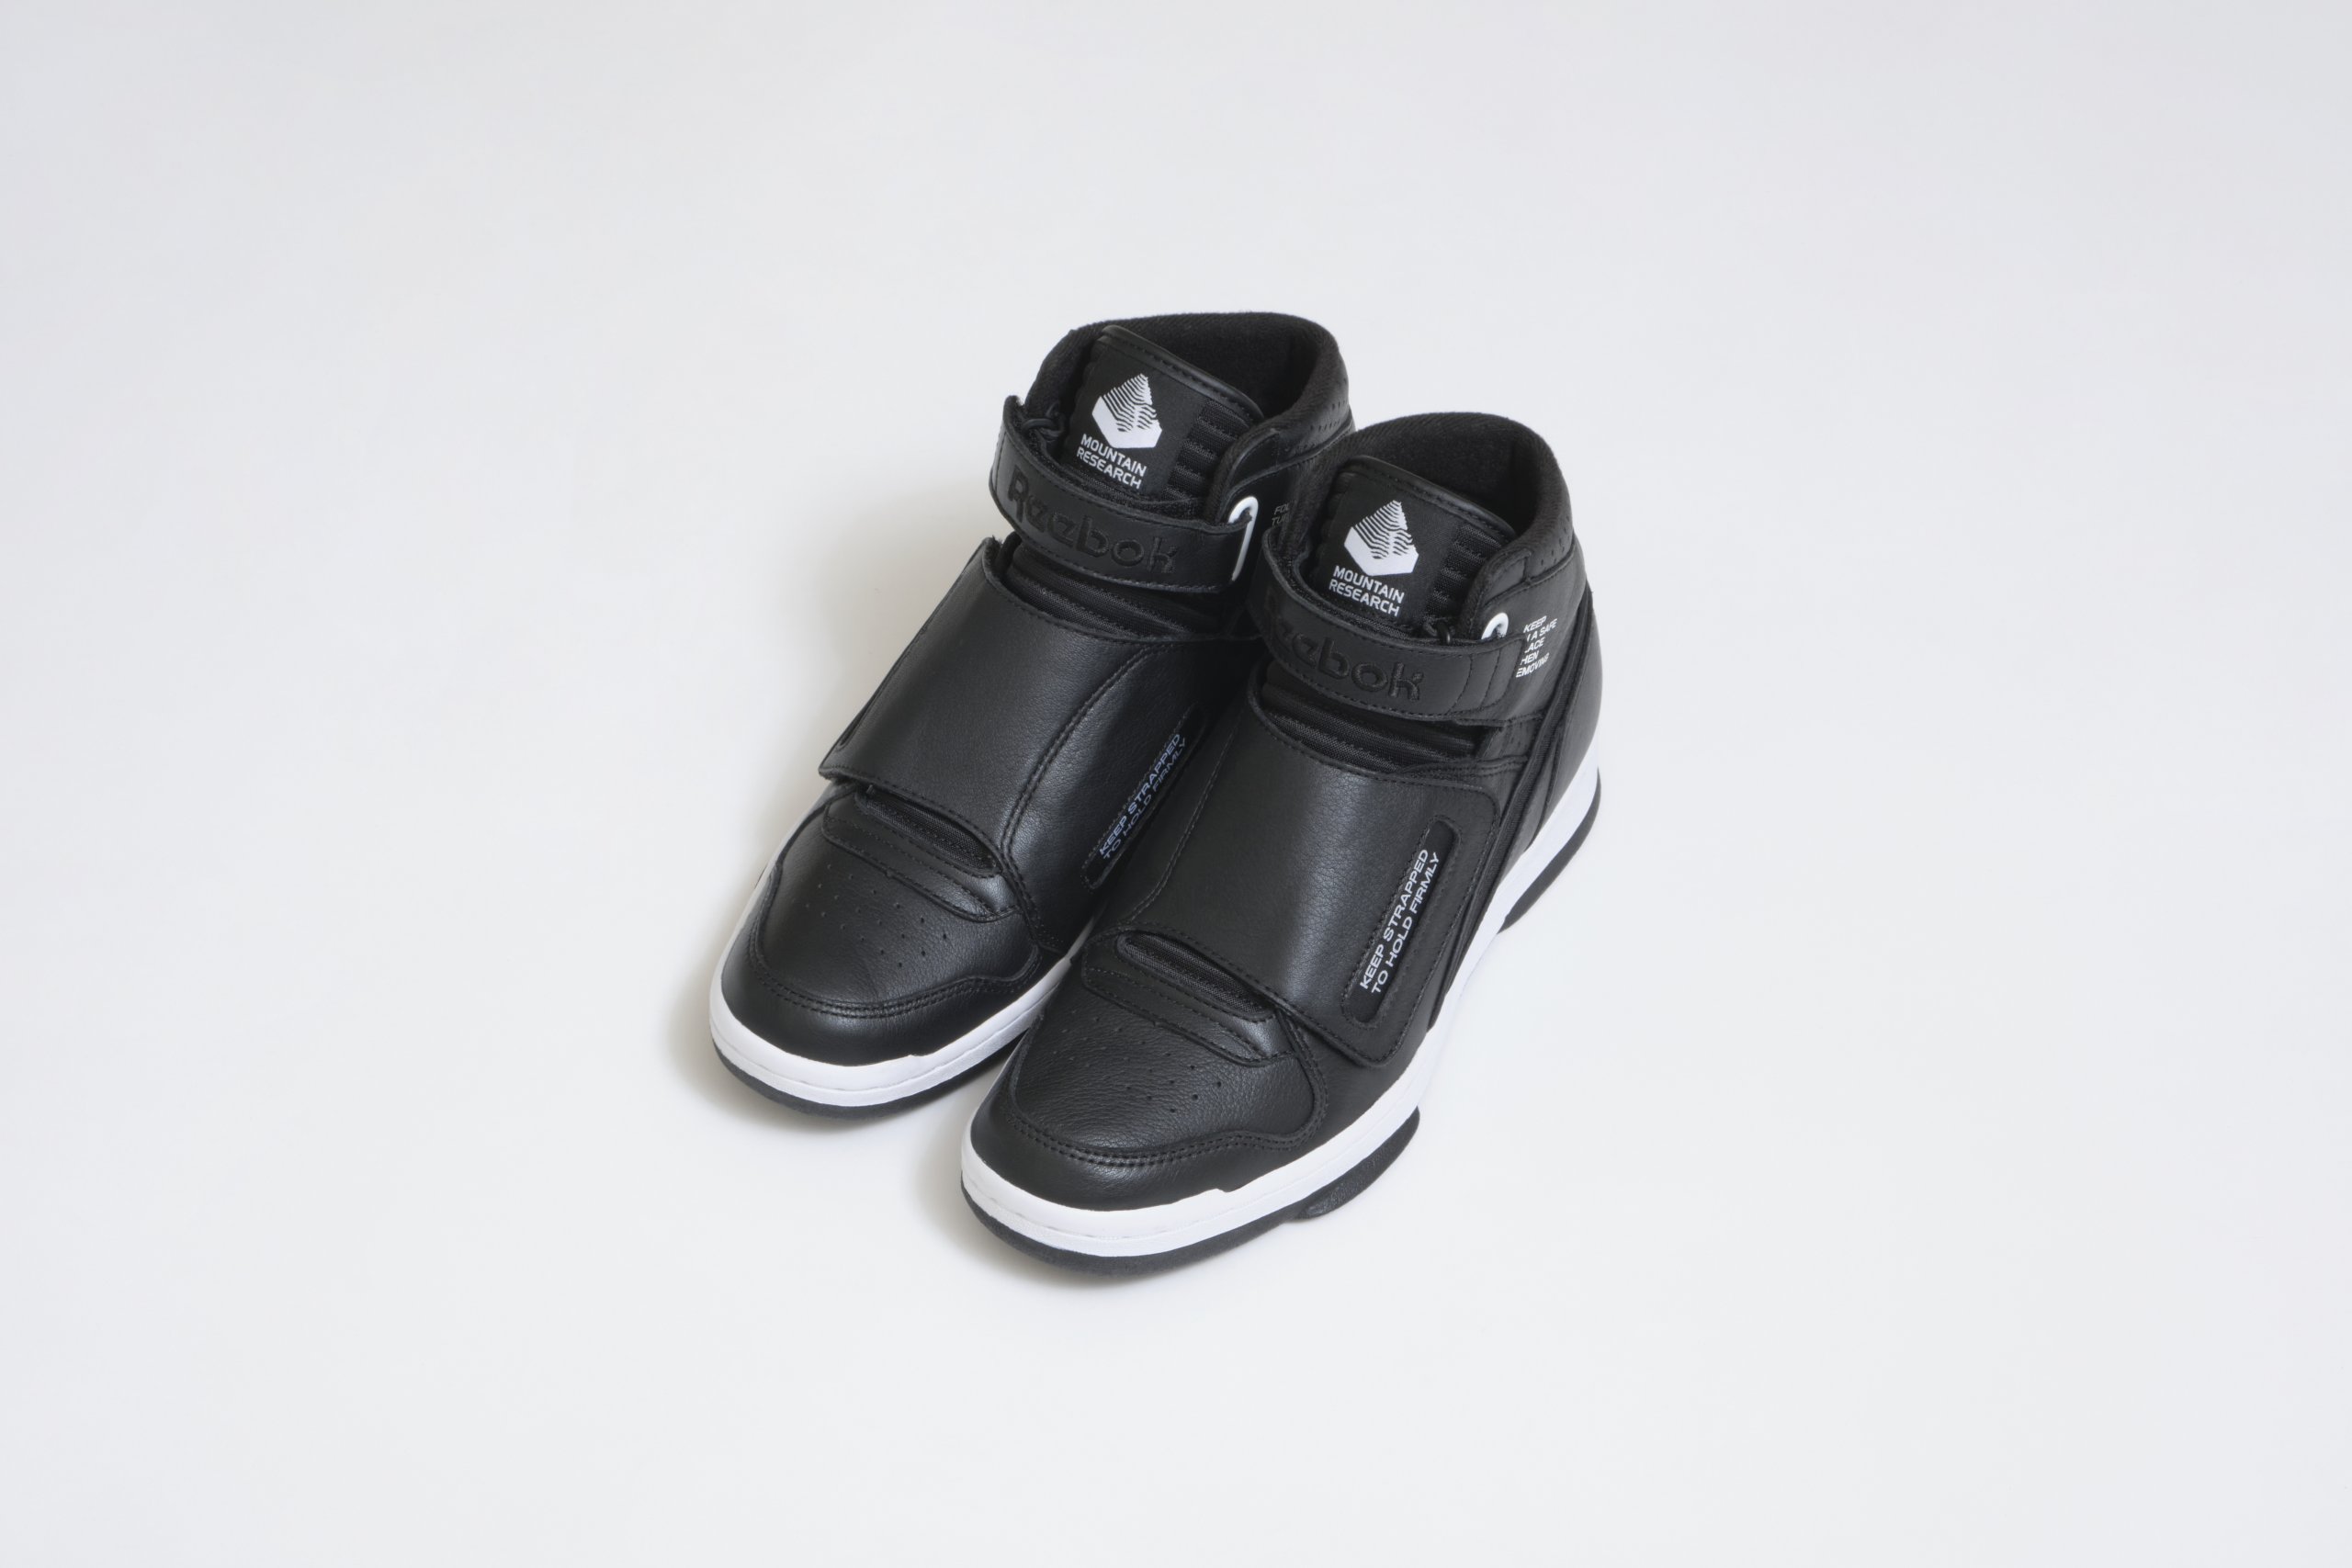 Underrated shoe Reebok (Alien Stomper) : r/Sneakers